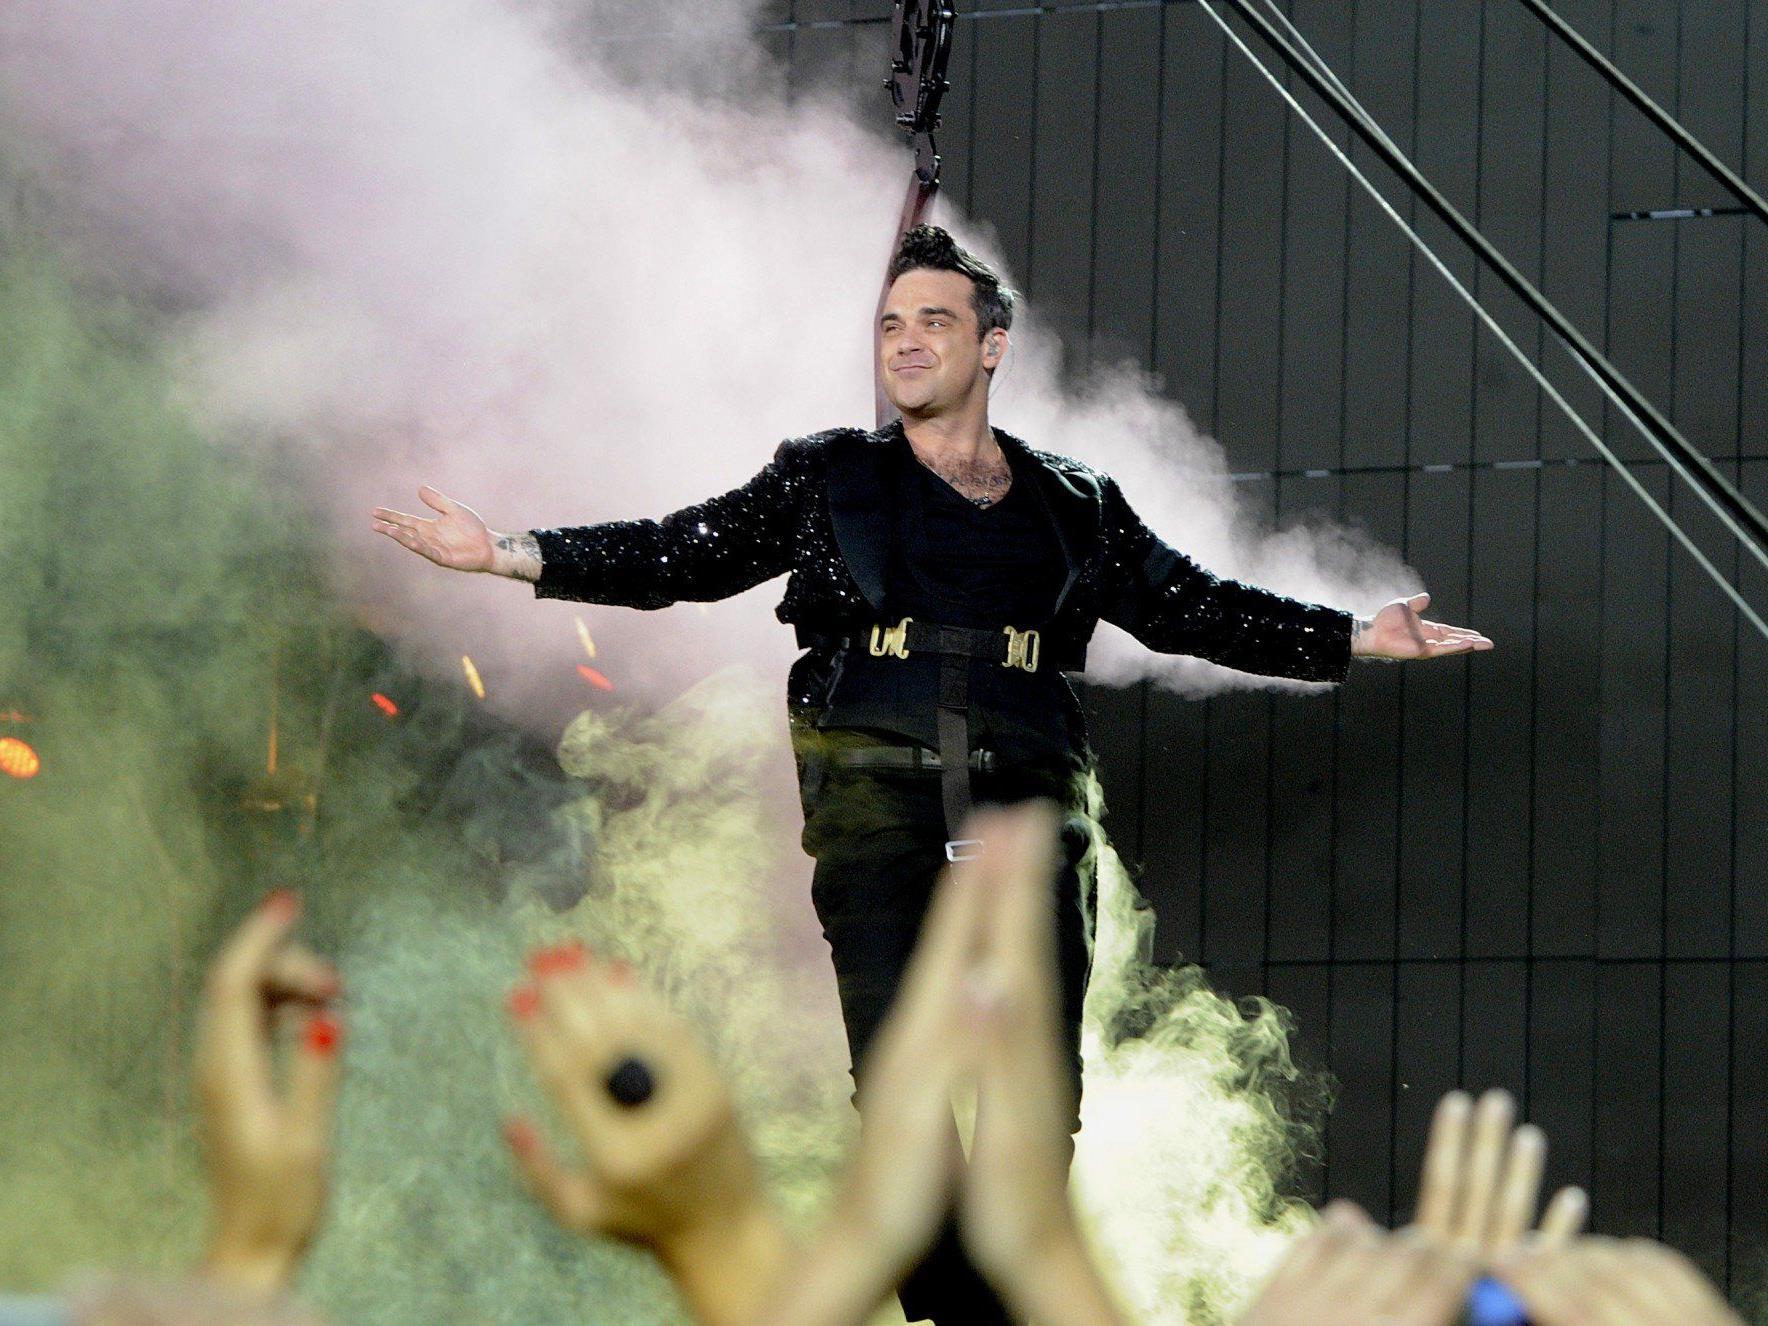 Robbie Williams in Wien: Zwischen großer Pose und intimen Momenten